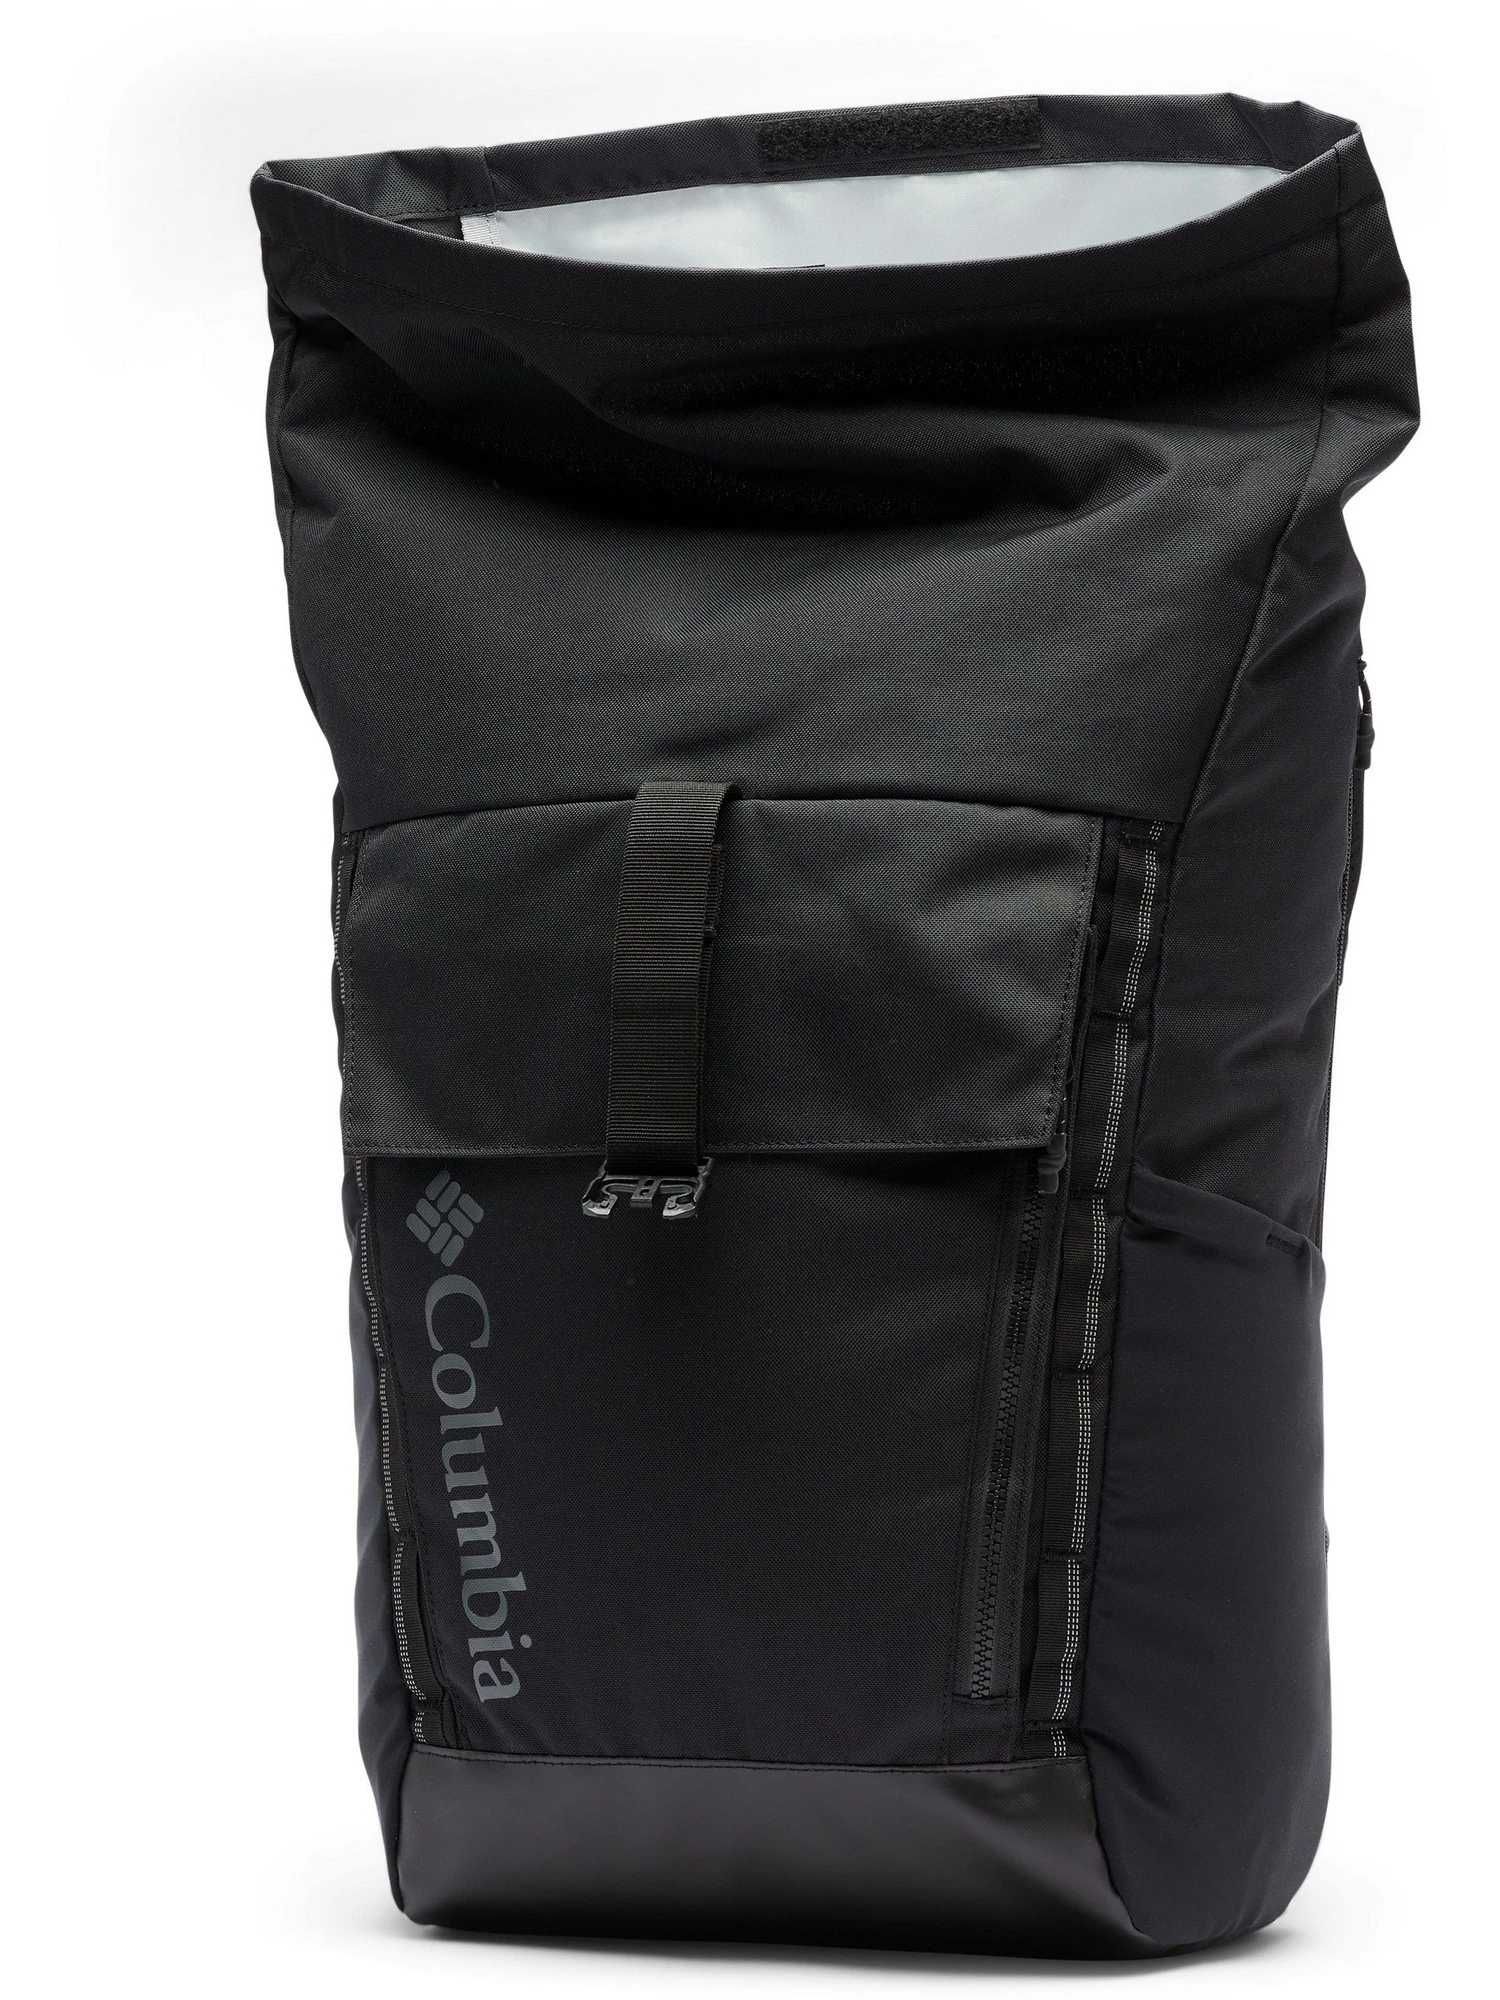 Rucsac COLUMBIA CONVEY II, 27L Rolltop Backpack,nou,cu eticheta